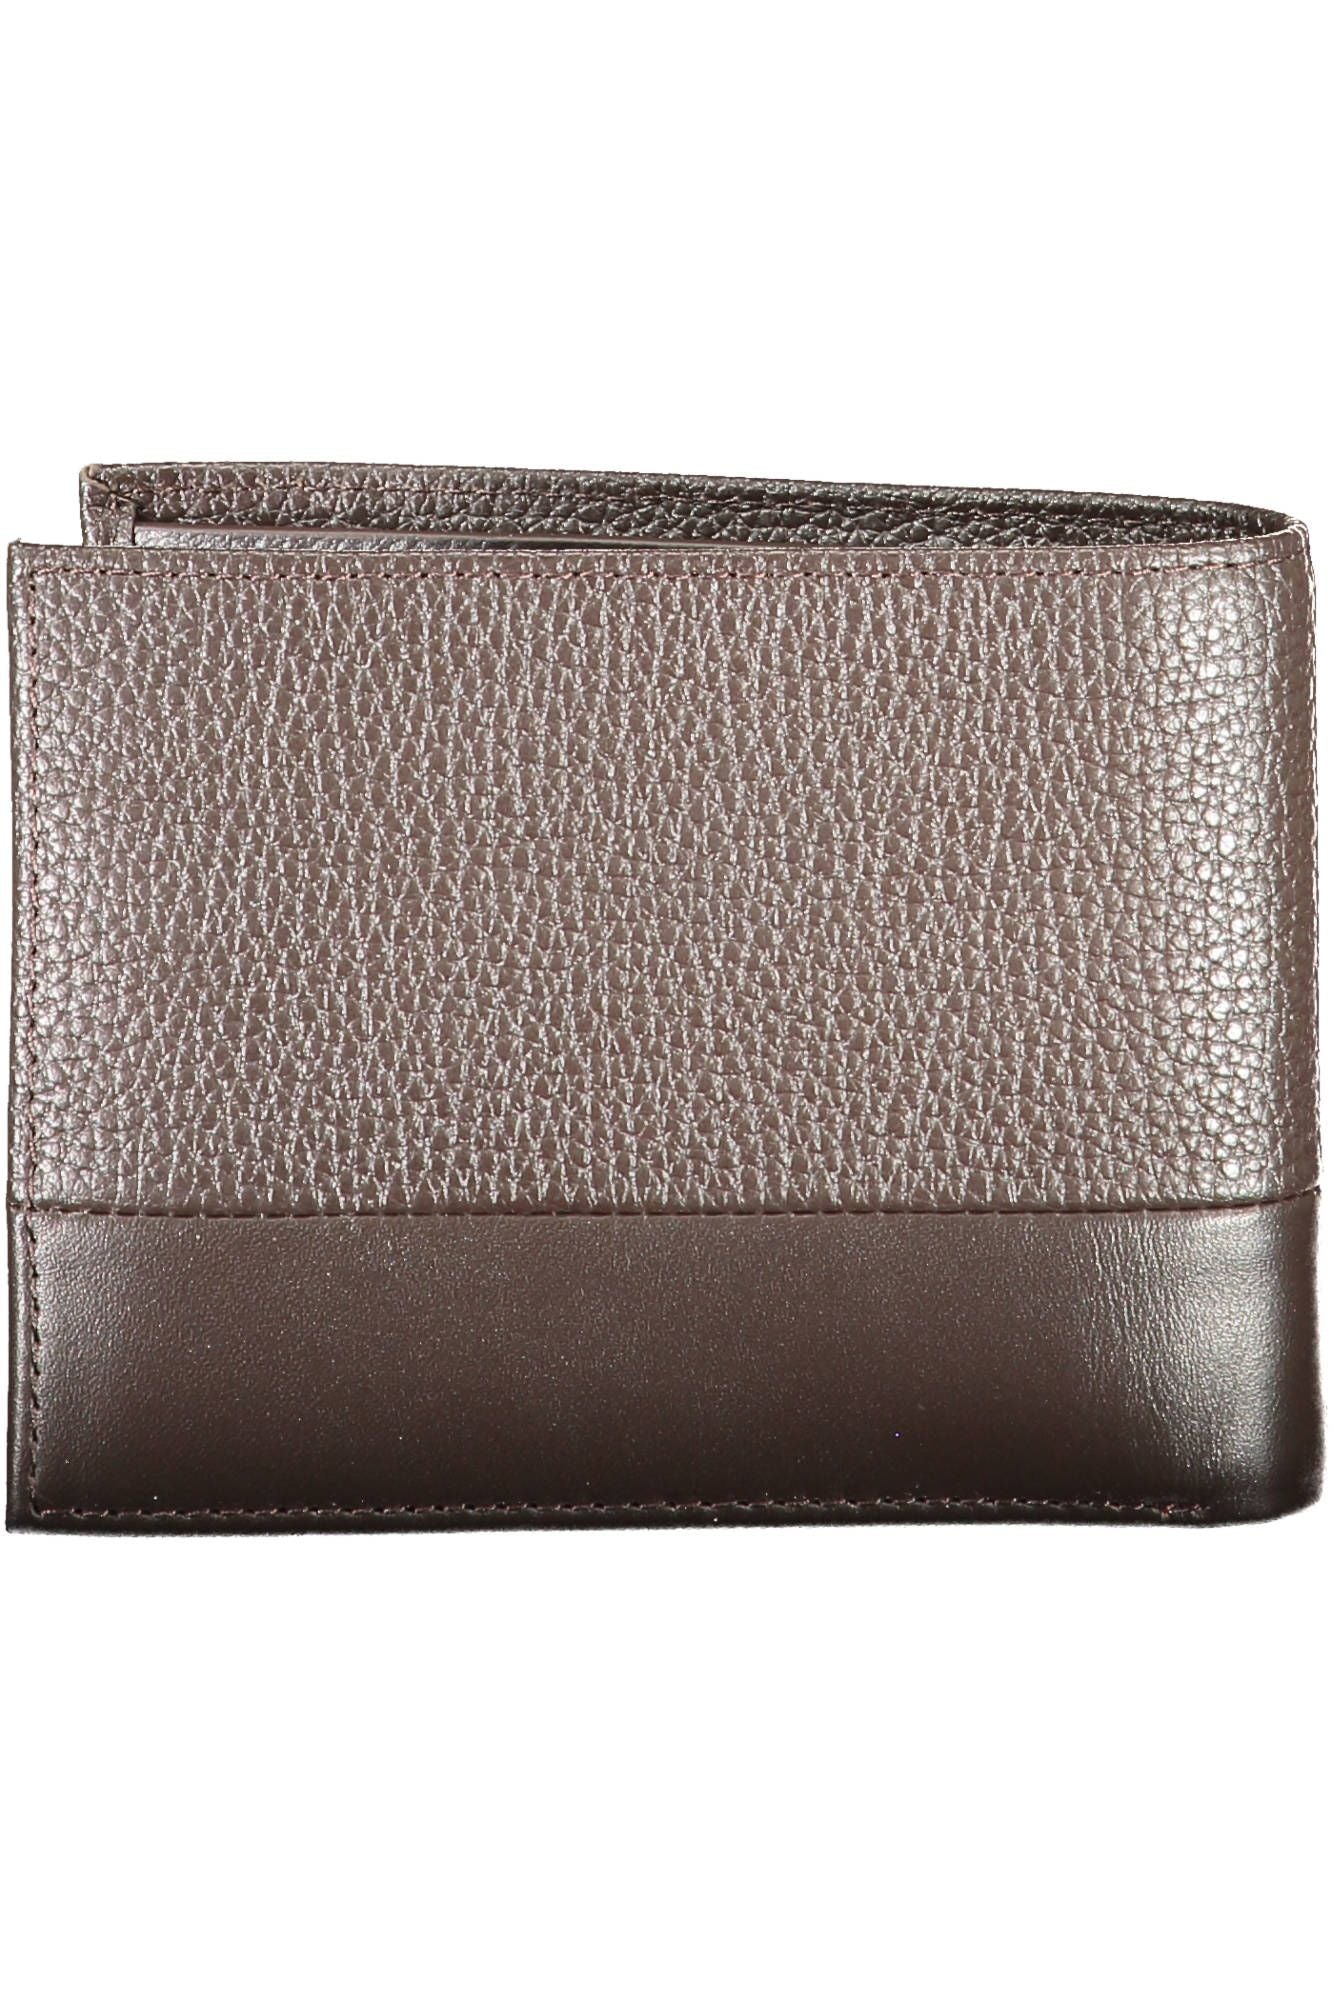 Calvin Klein  Brown Leather Wallet